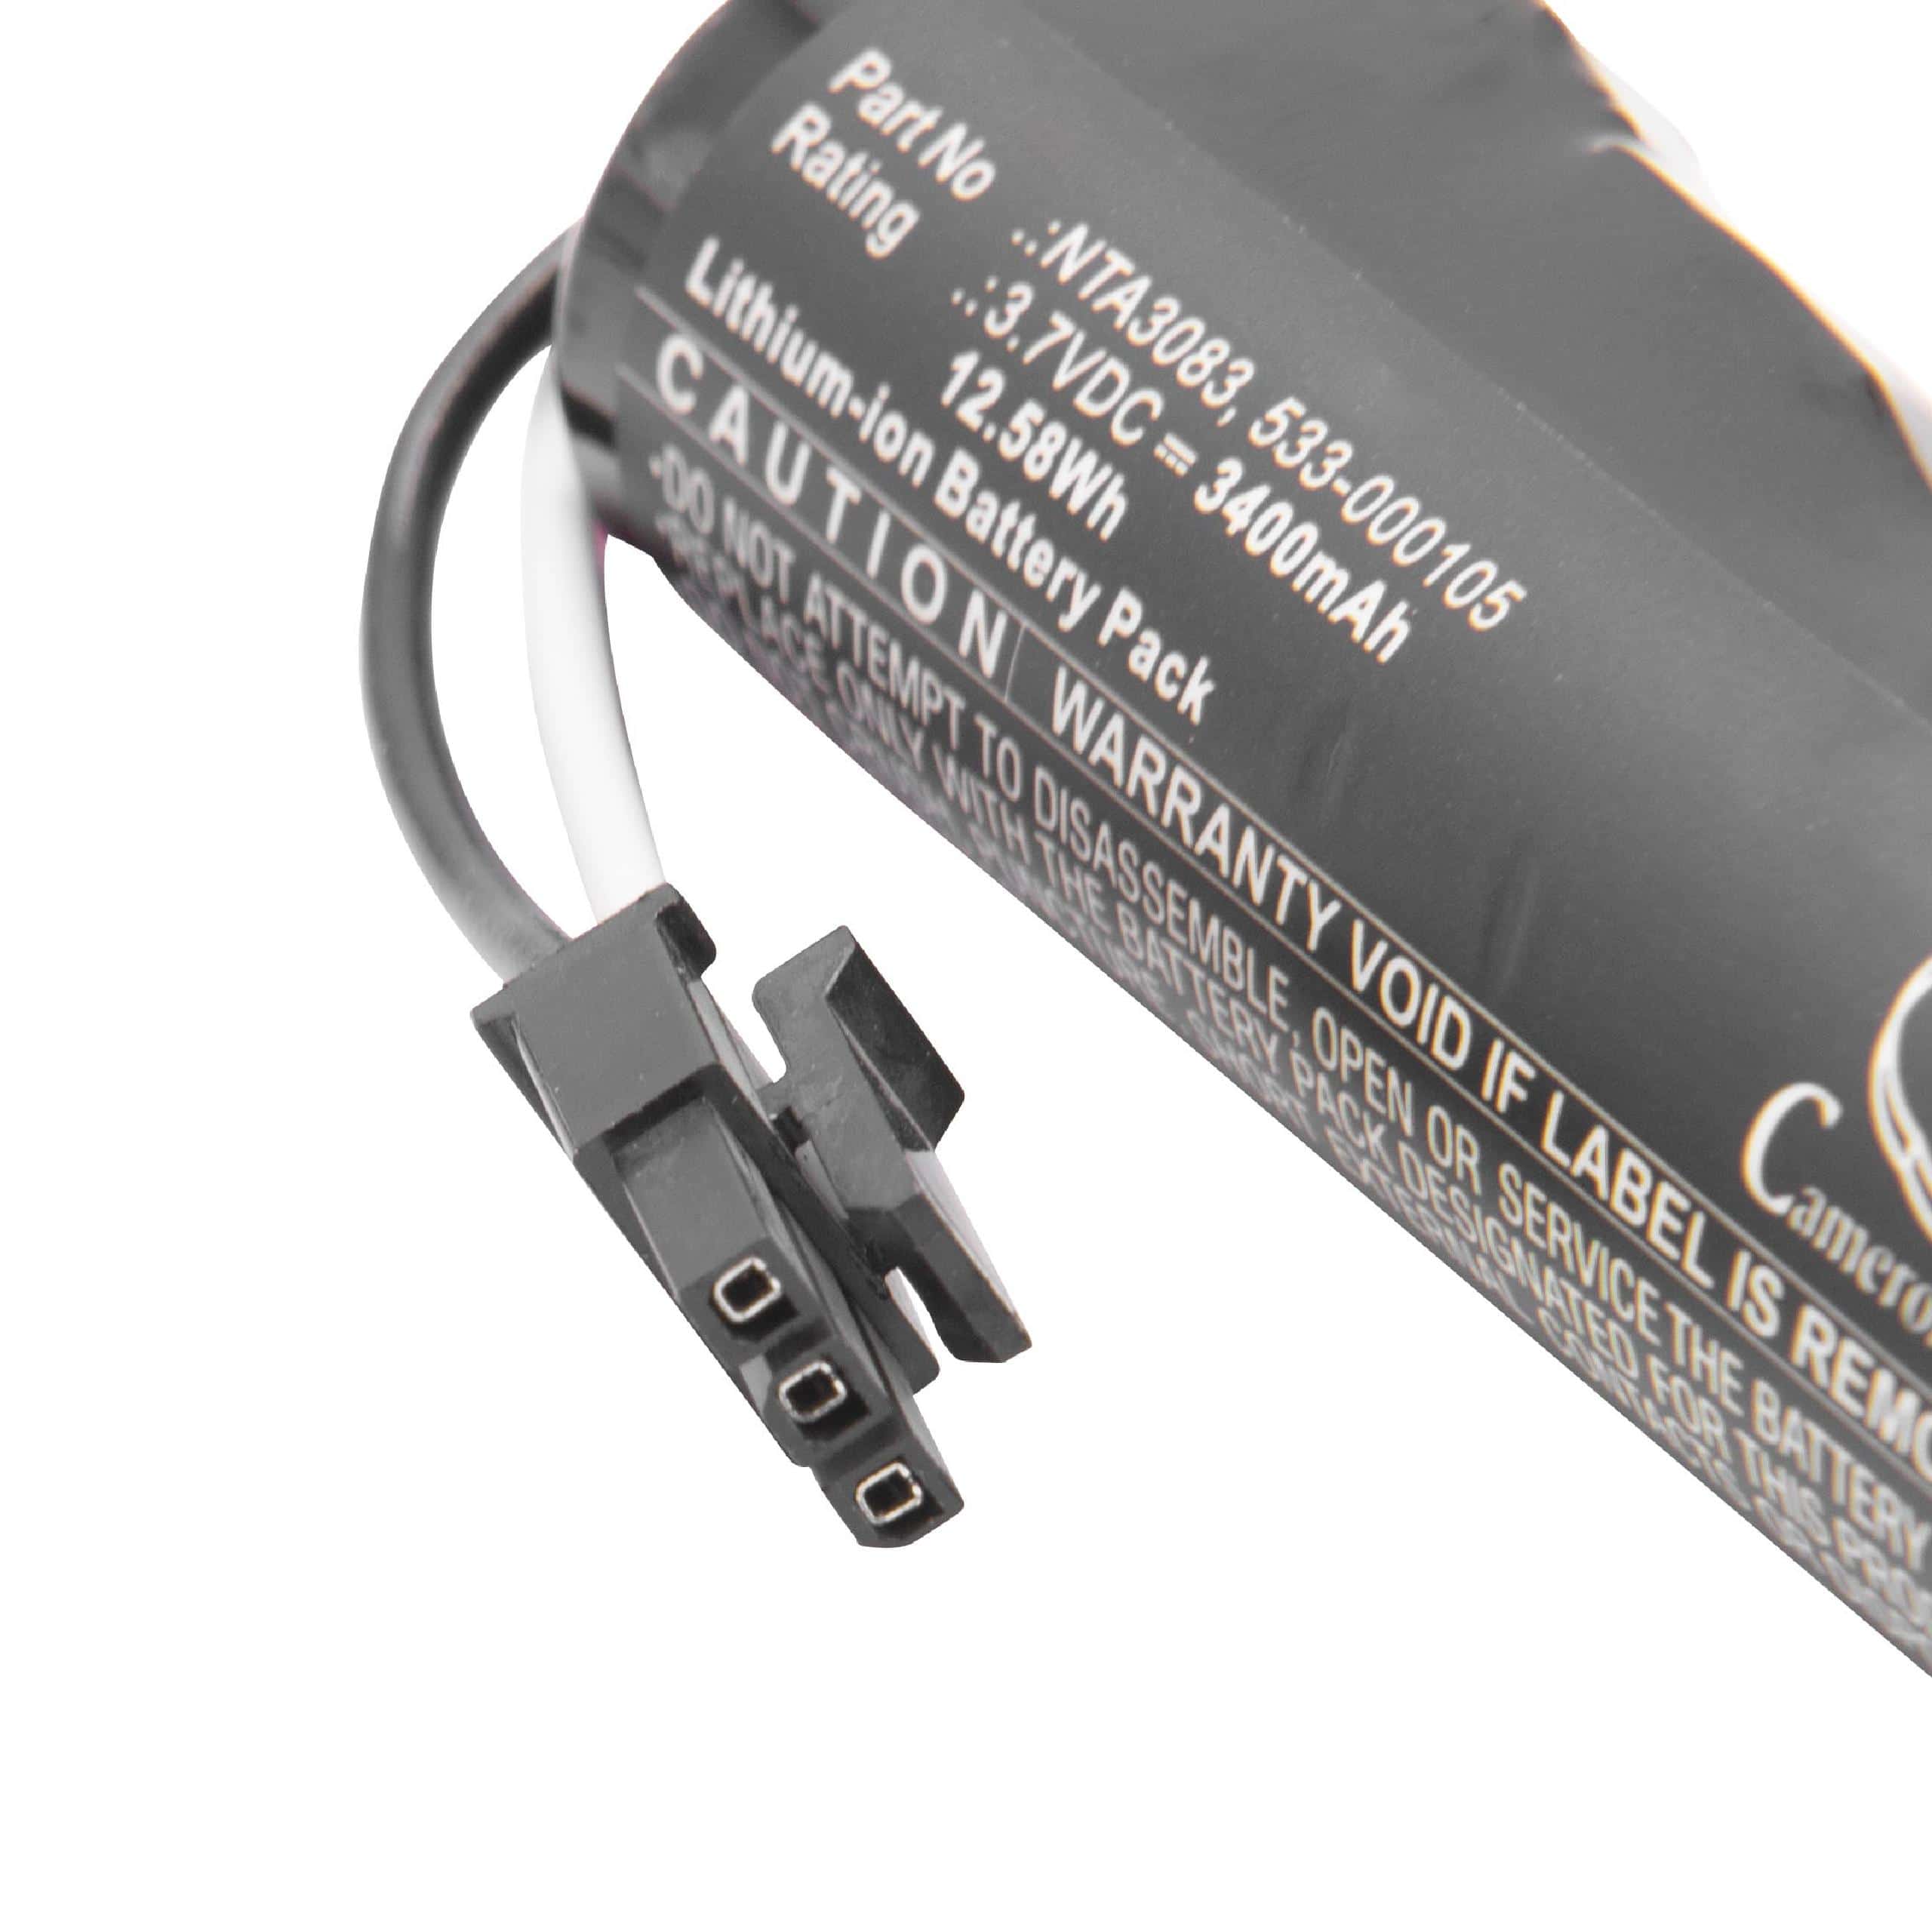 Batterie remplace Logitech NTA3083, 533-000105 pour enceinte Logitech - 3400mAh 3,7V Li-ion